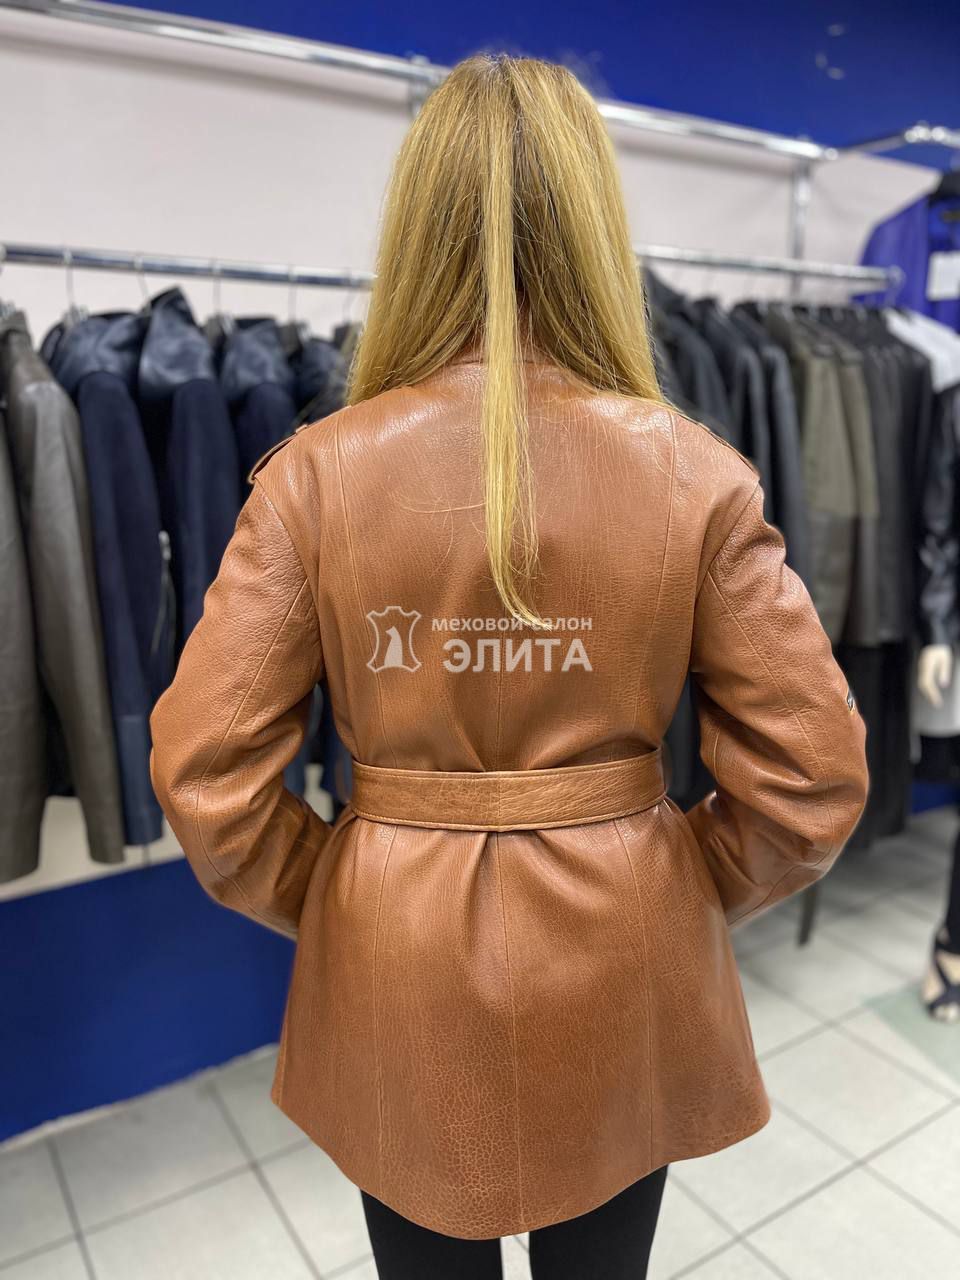 Куртка из натуральной кожи м. 2778 р-р 48-54, цена 37000 рублей в интернет-магазине кожи и меха ЭЛИТА. Вид 2